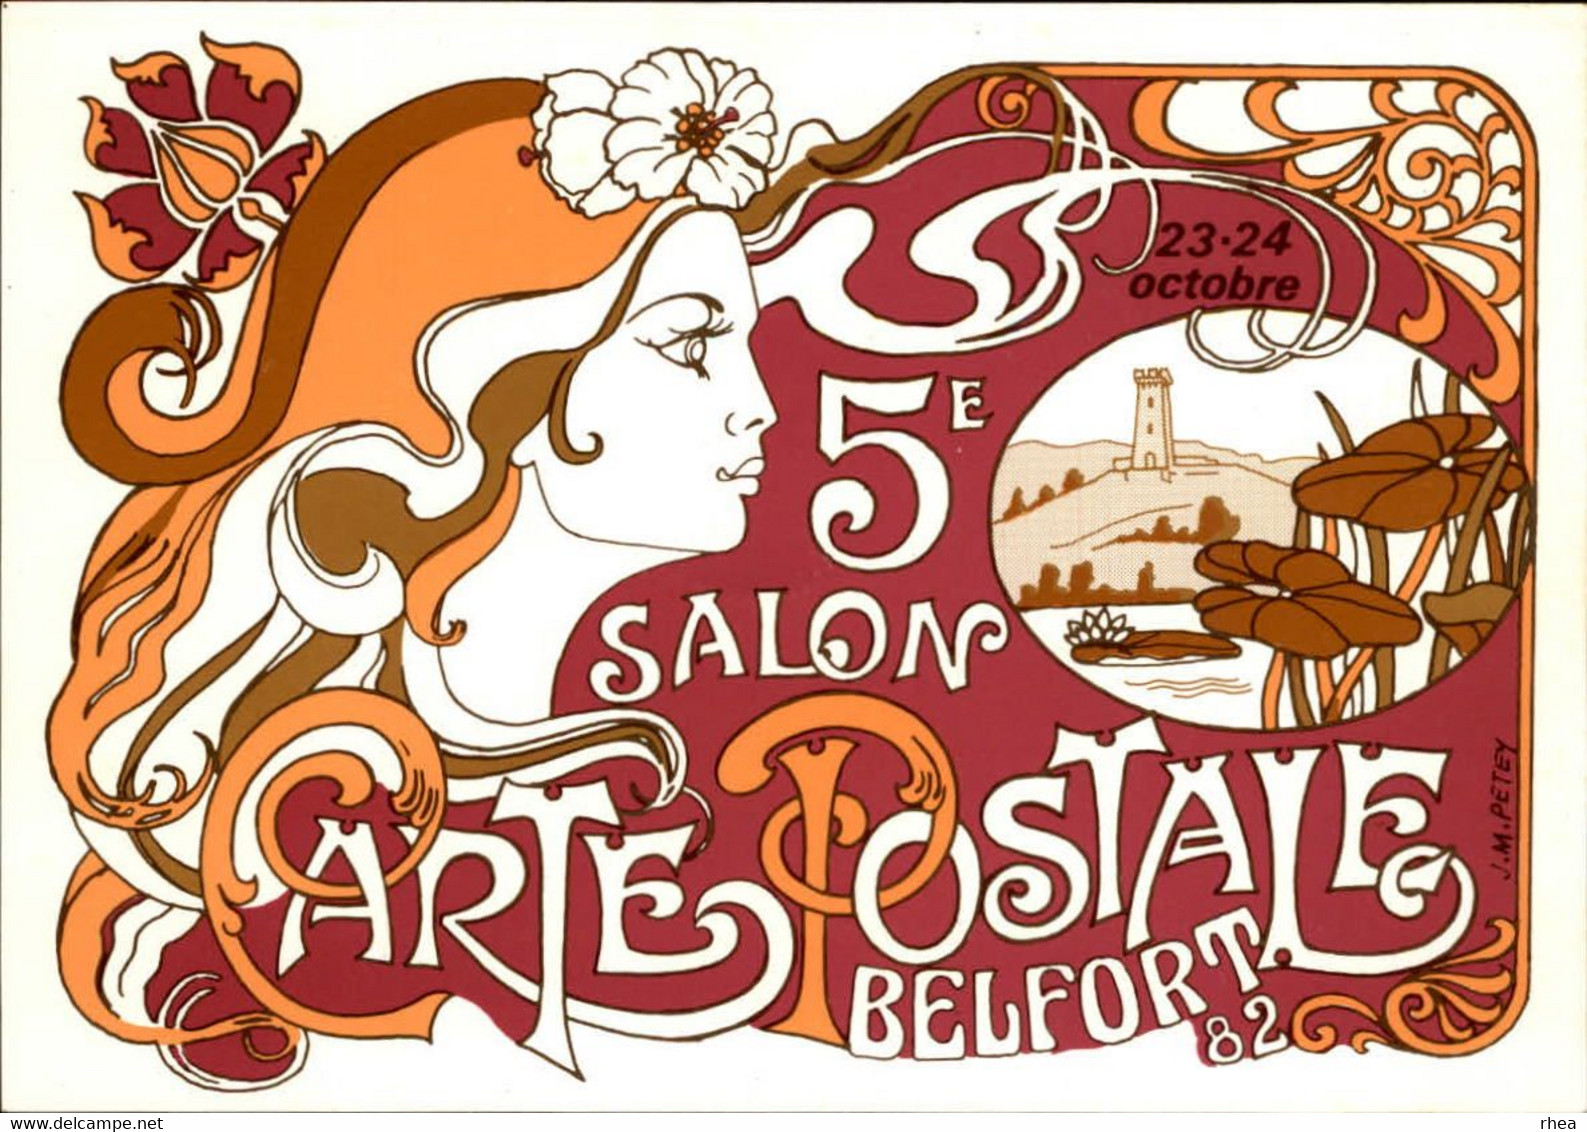 SALONS DE COLLECTIONS - Salon De Cartes Postales - 90 BELFORT - 1982 - Dessin De Petey - Bourses & Salons De Collections